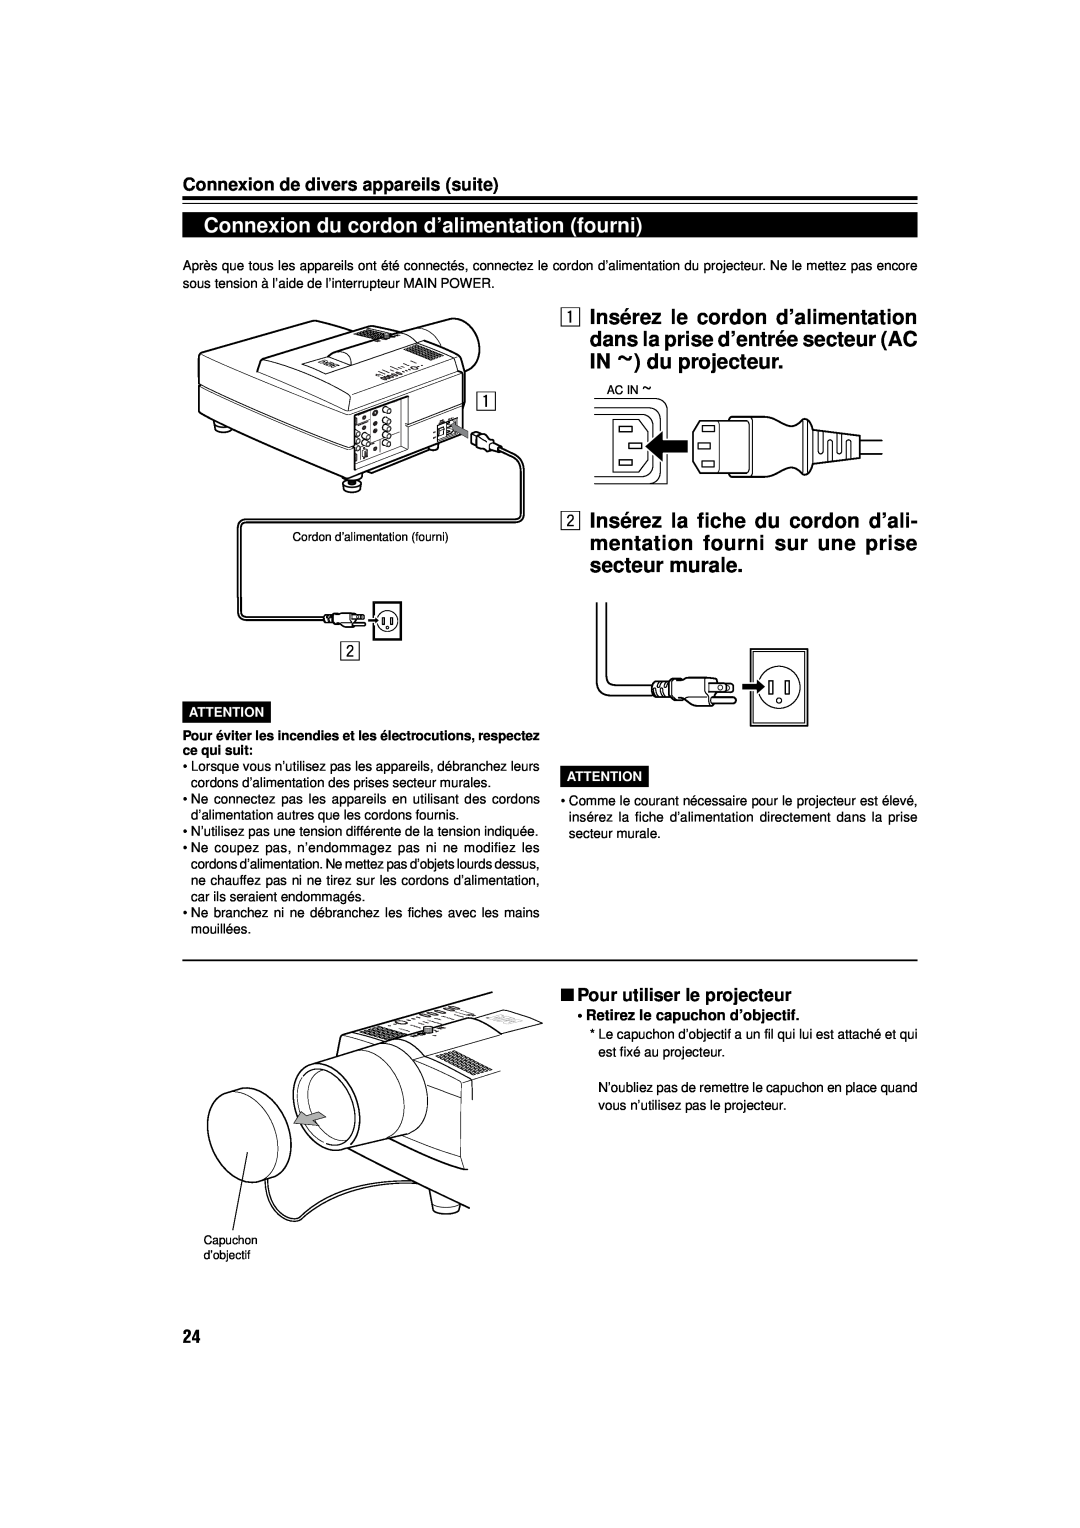 JVC DLA-M15U Connexion du cordon d’alimentation fourni, 1 Insérez le cordon d’alimentation, Pour utiliser le projecteur 